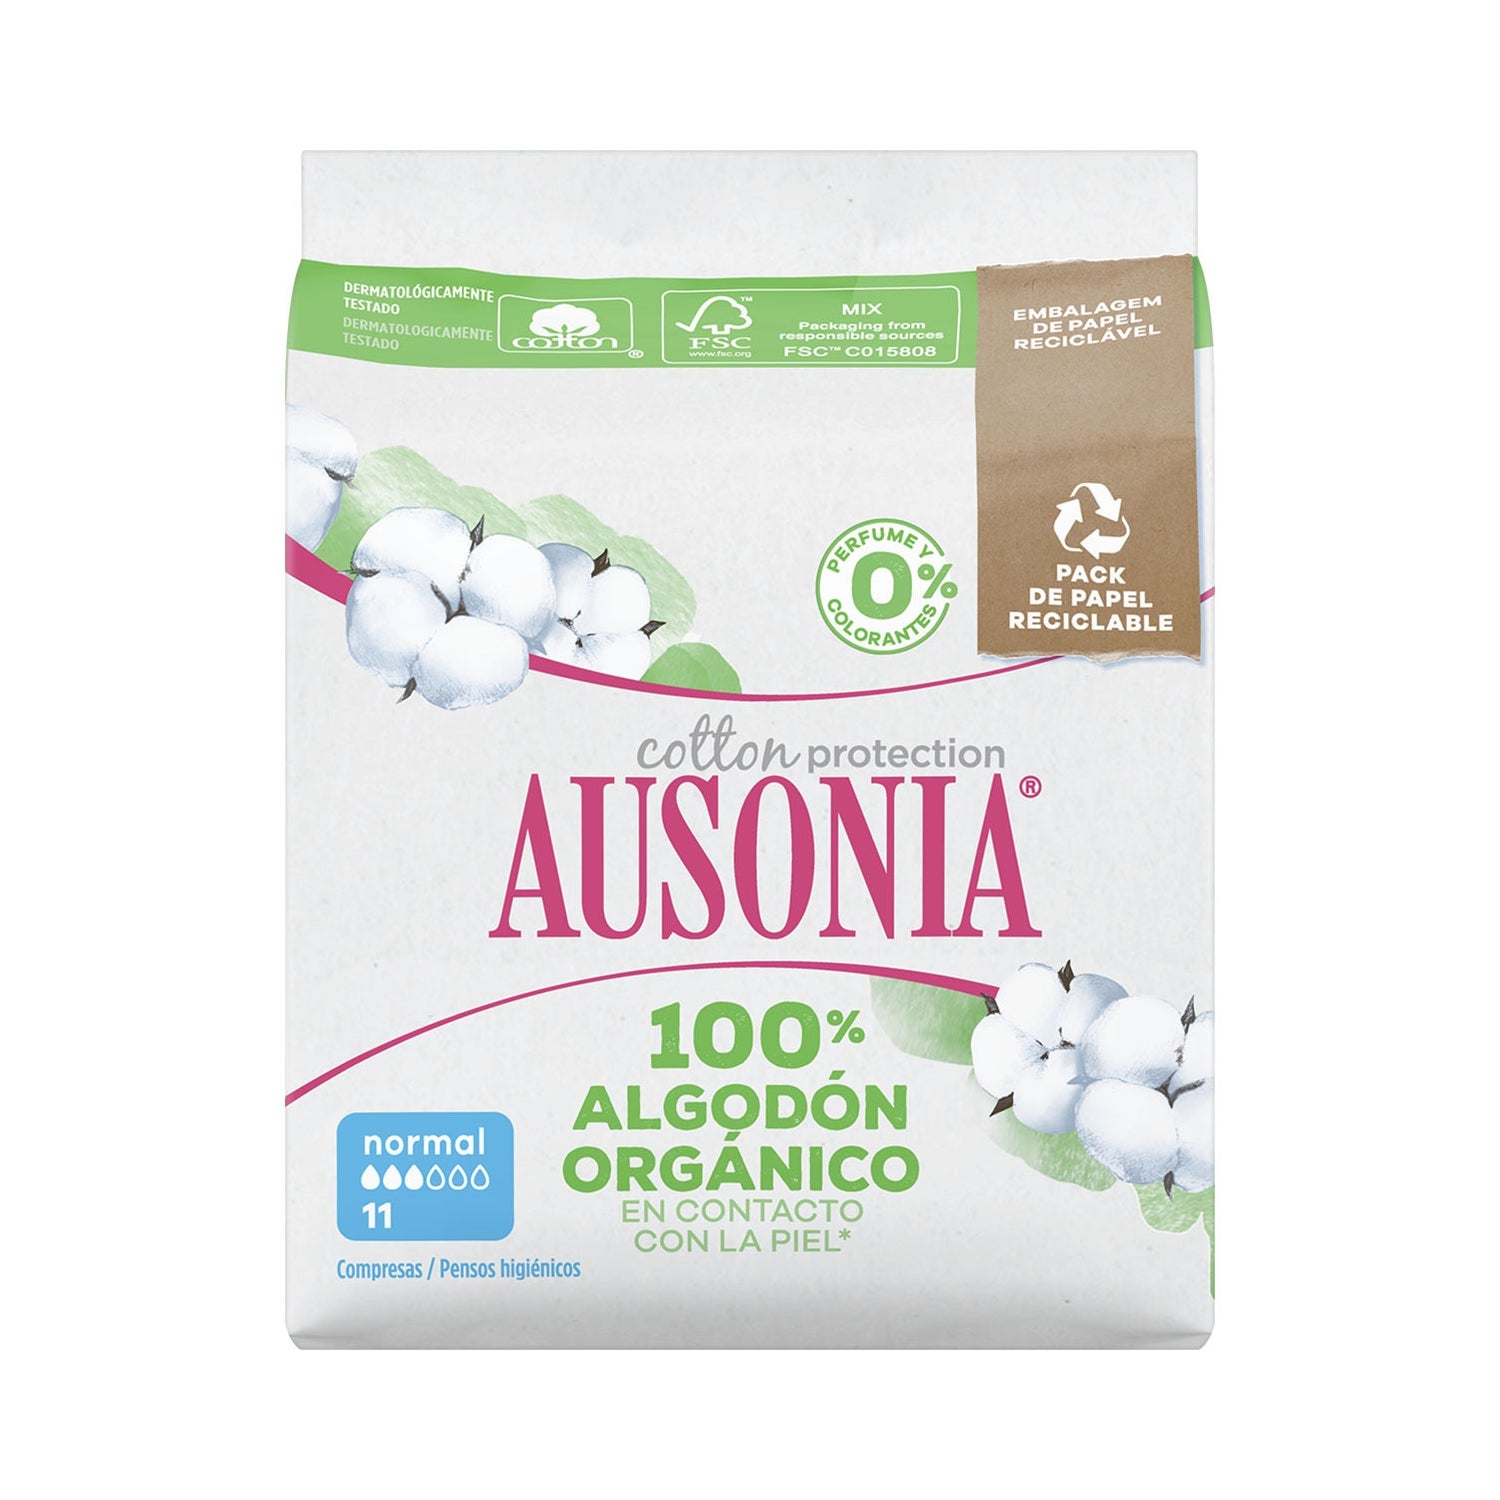 Ausonia Compresas 100% Algodón Orgánico Absorción Normal 12 uds